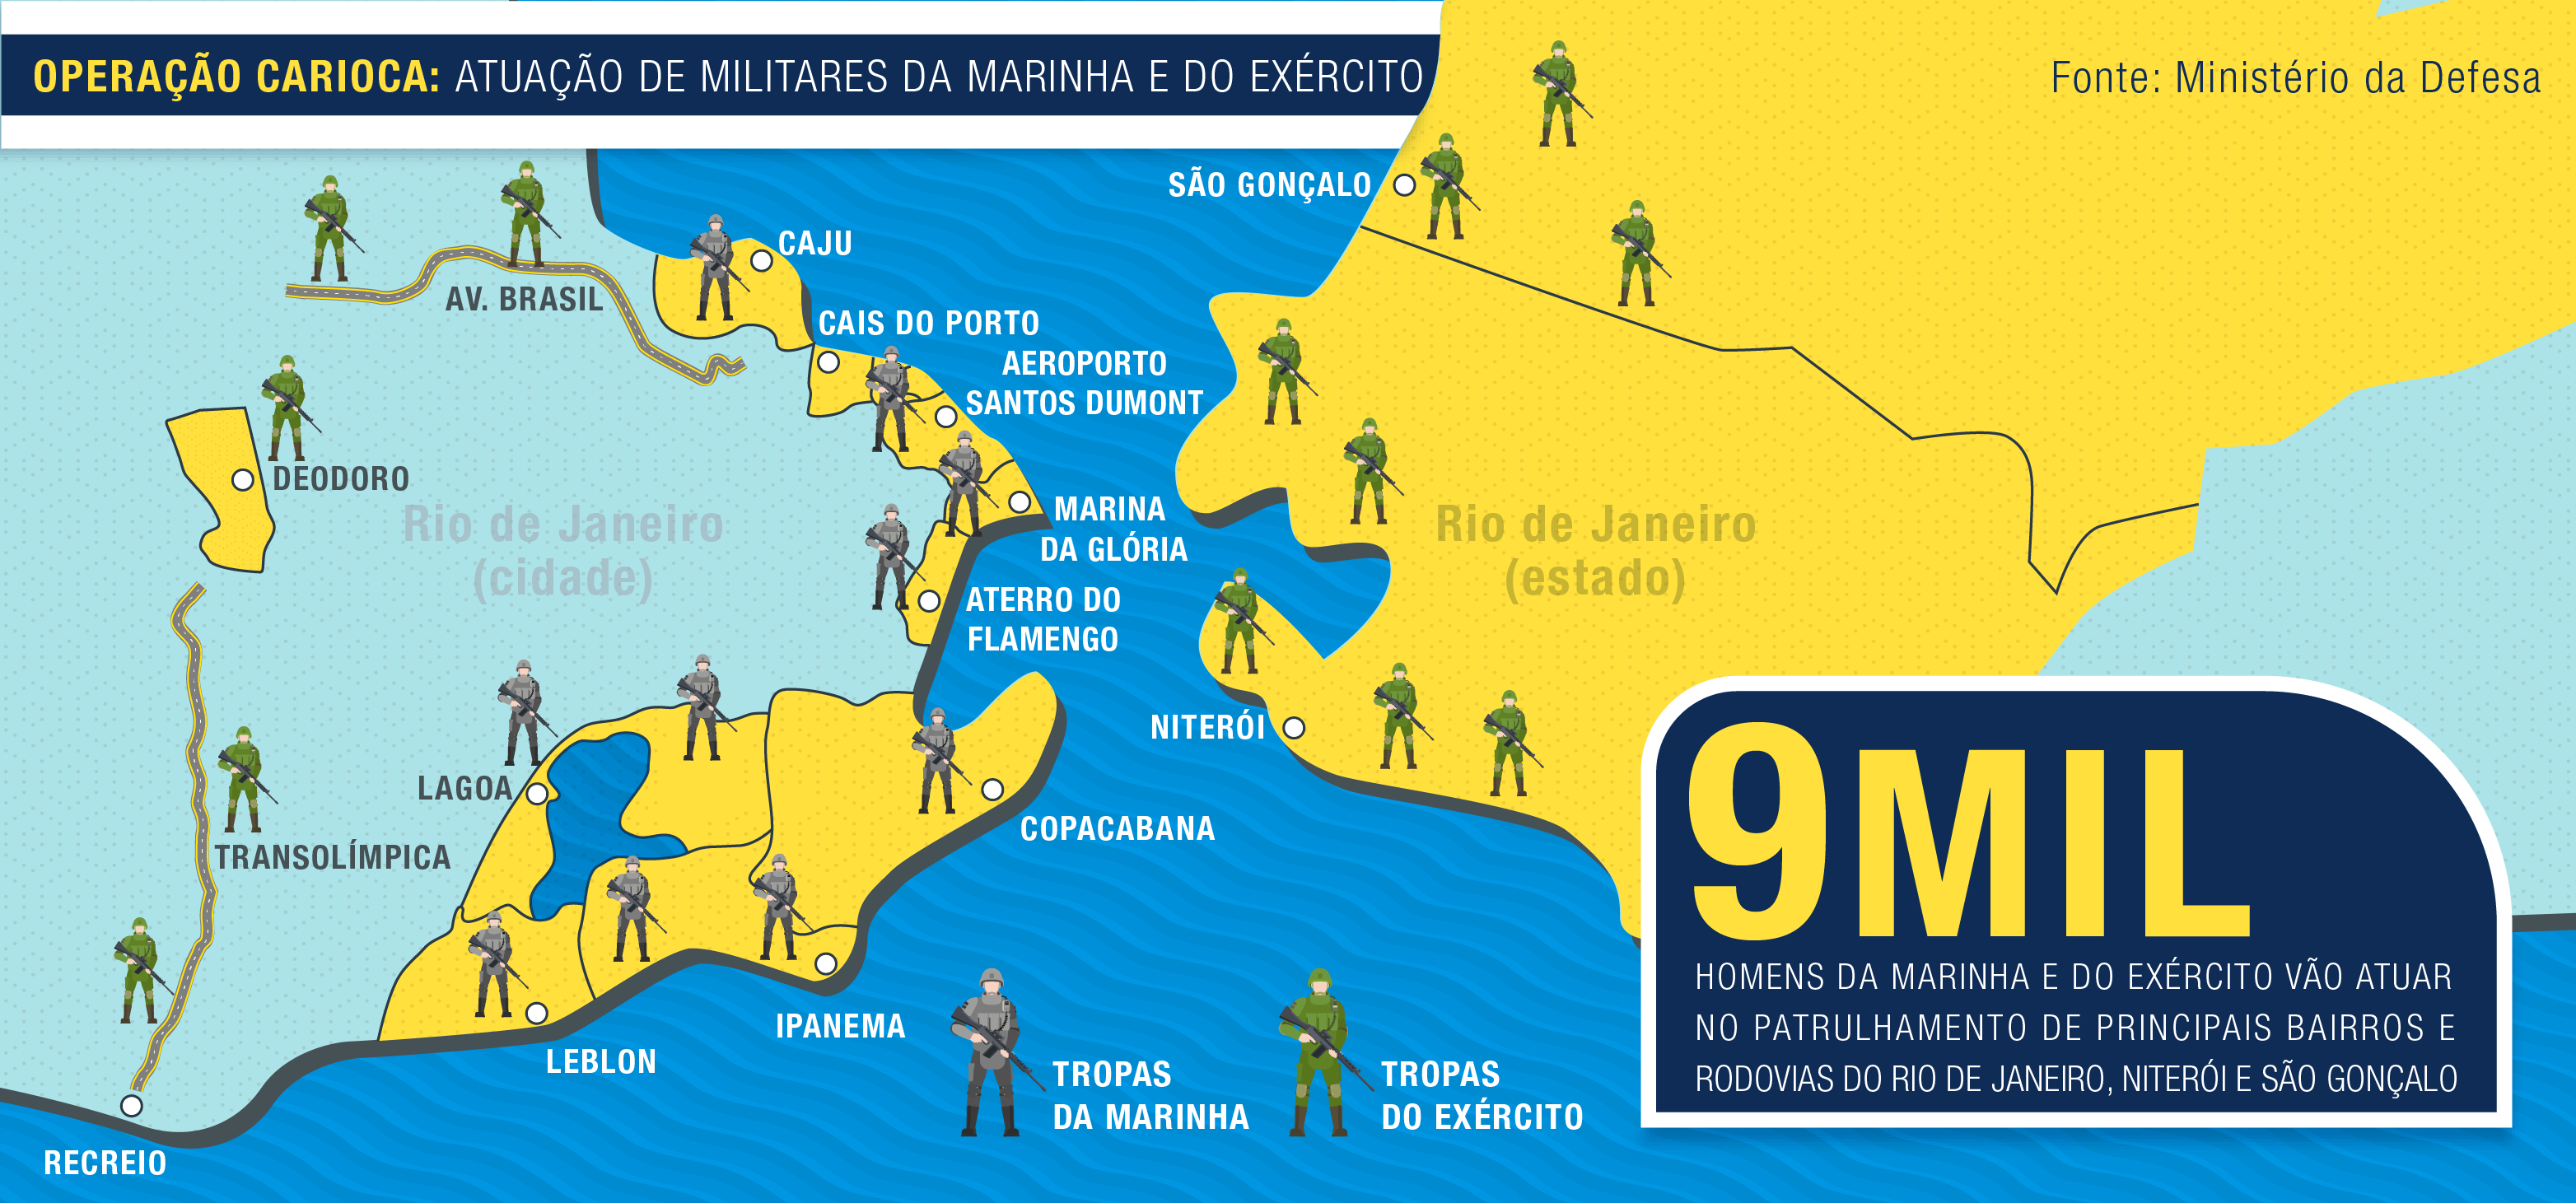 Info_Defesa_Forcas_Armadas_Rio-03.png